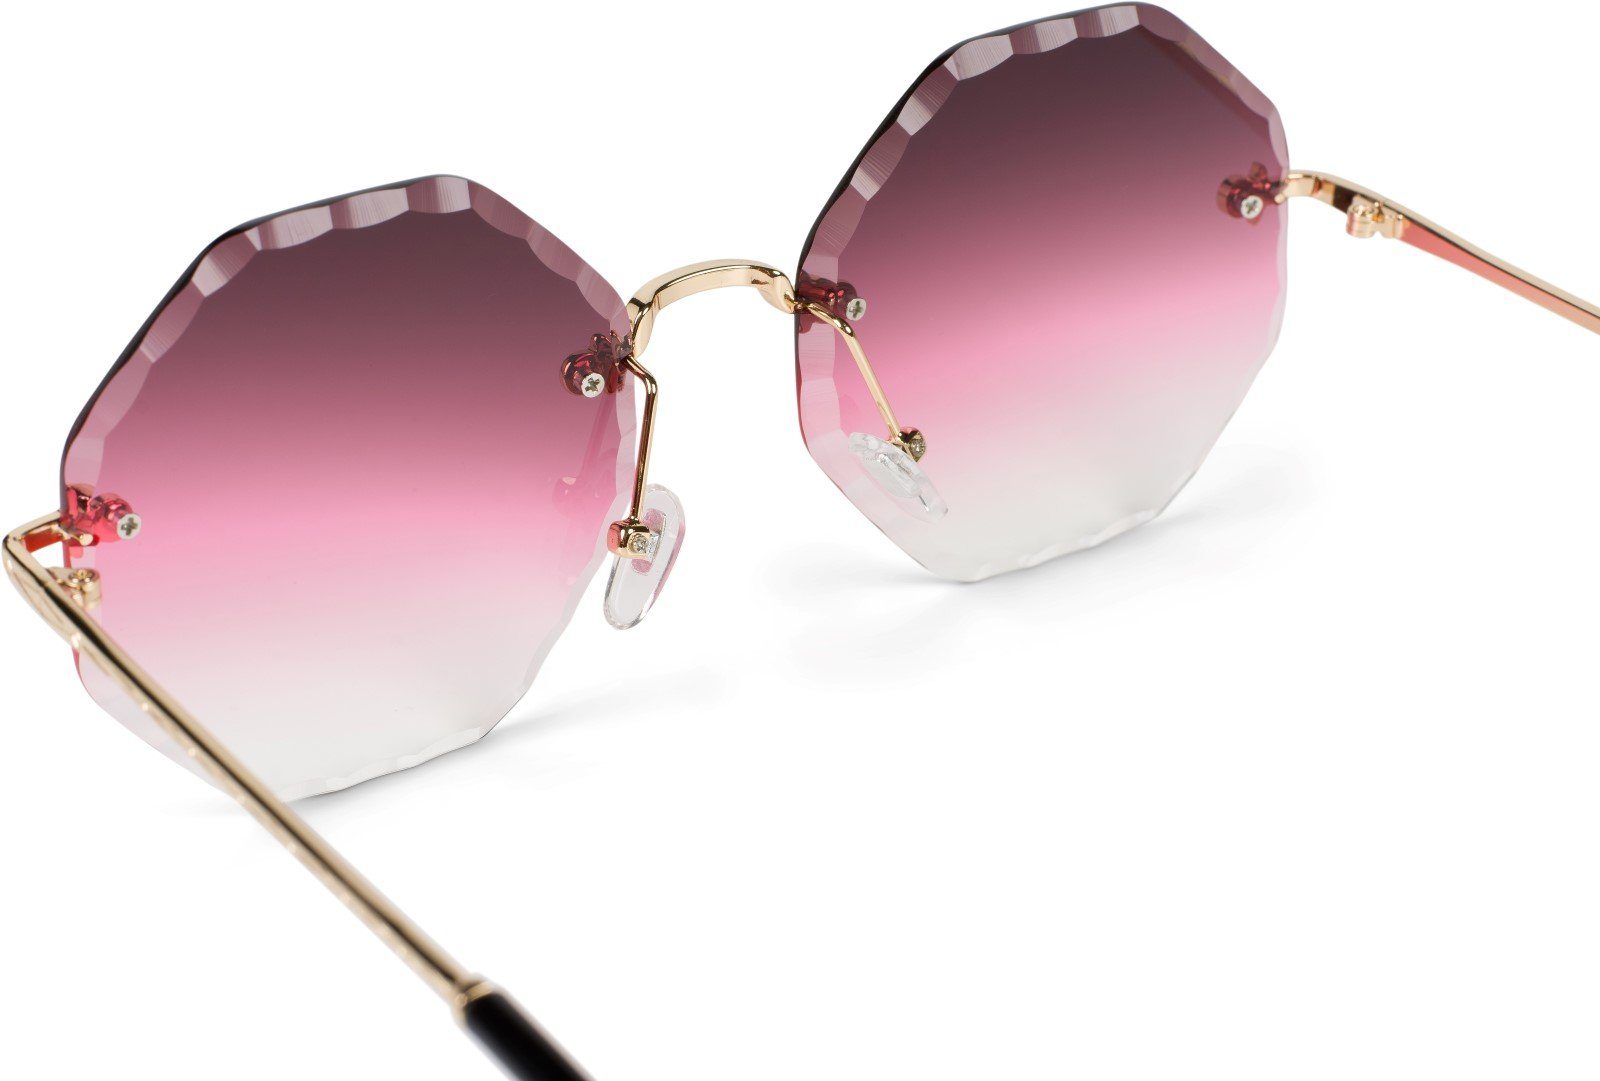 / (1-St) Gold Gestell Getönt Sonnenbrille Verlauf Bordeaux-Pink Glas styleBREAKER